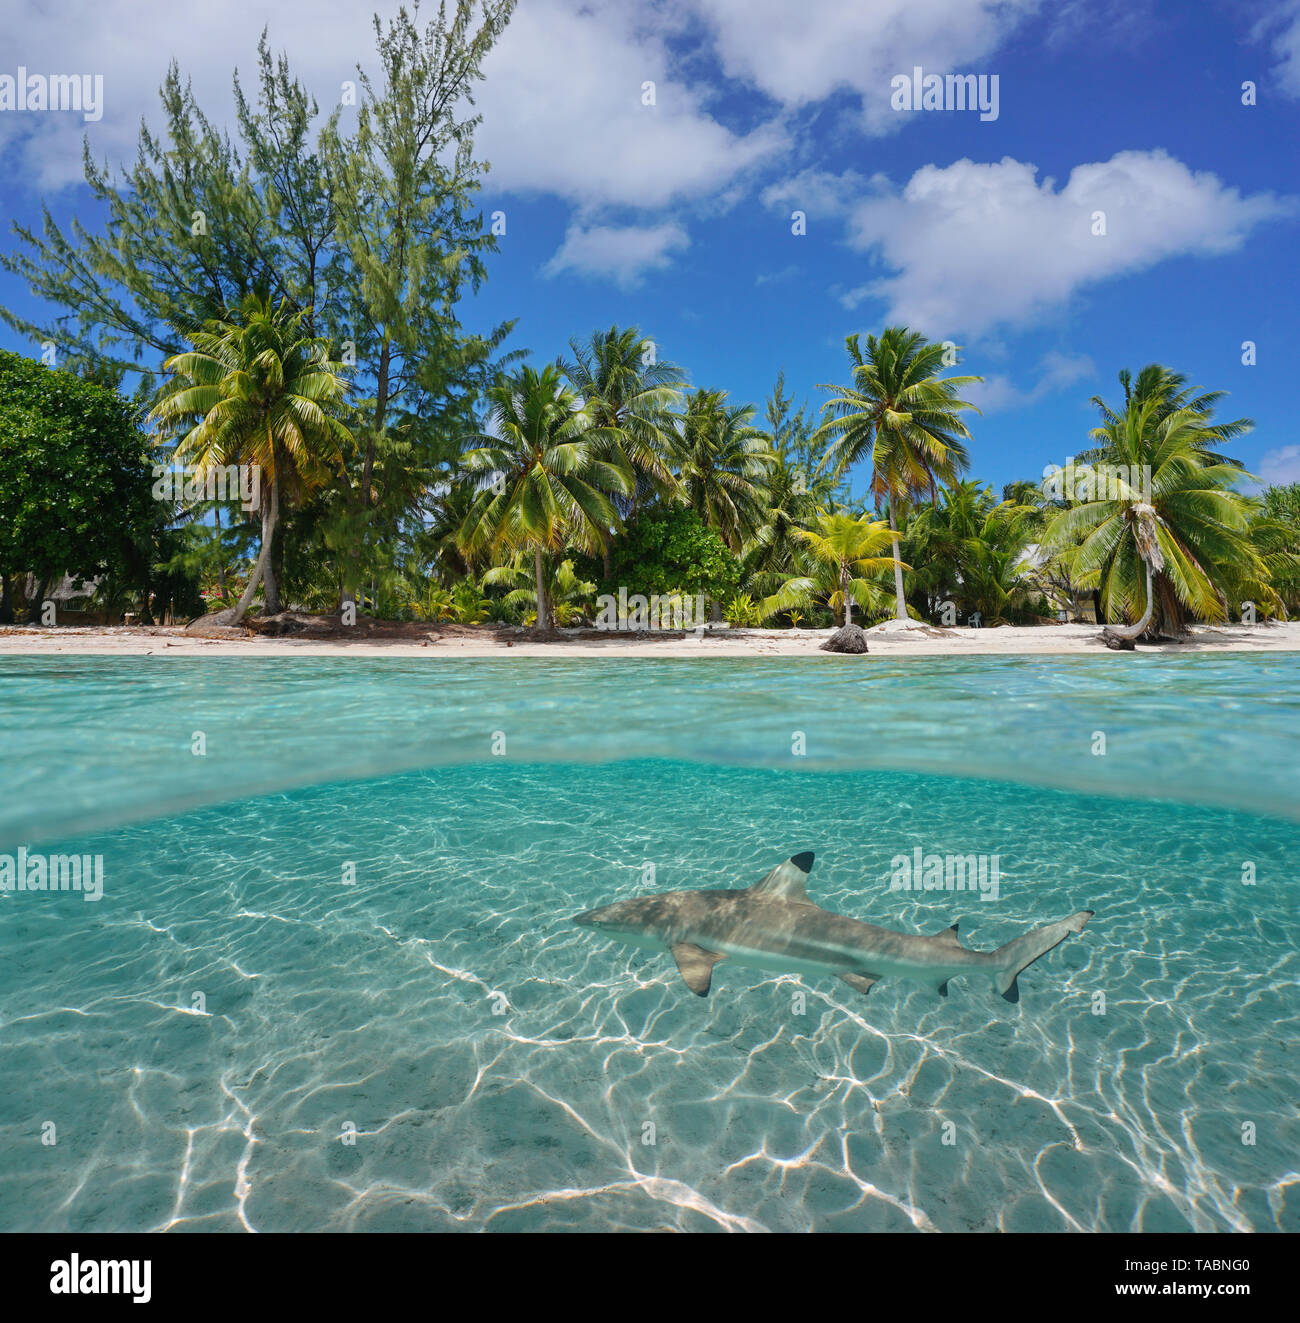 Tropischen Küste mit Kokospalmen und ein Hai unter Wasser, Tikehau Atoll, Tuamotu, Französisch Polynesien, Pazifik, geteilte Ansicht über und unter Wasser Stockfoto